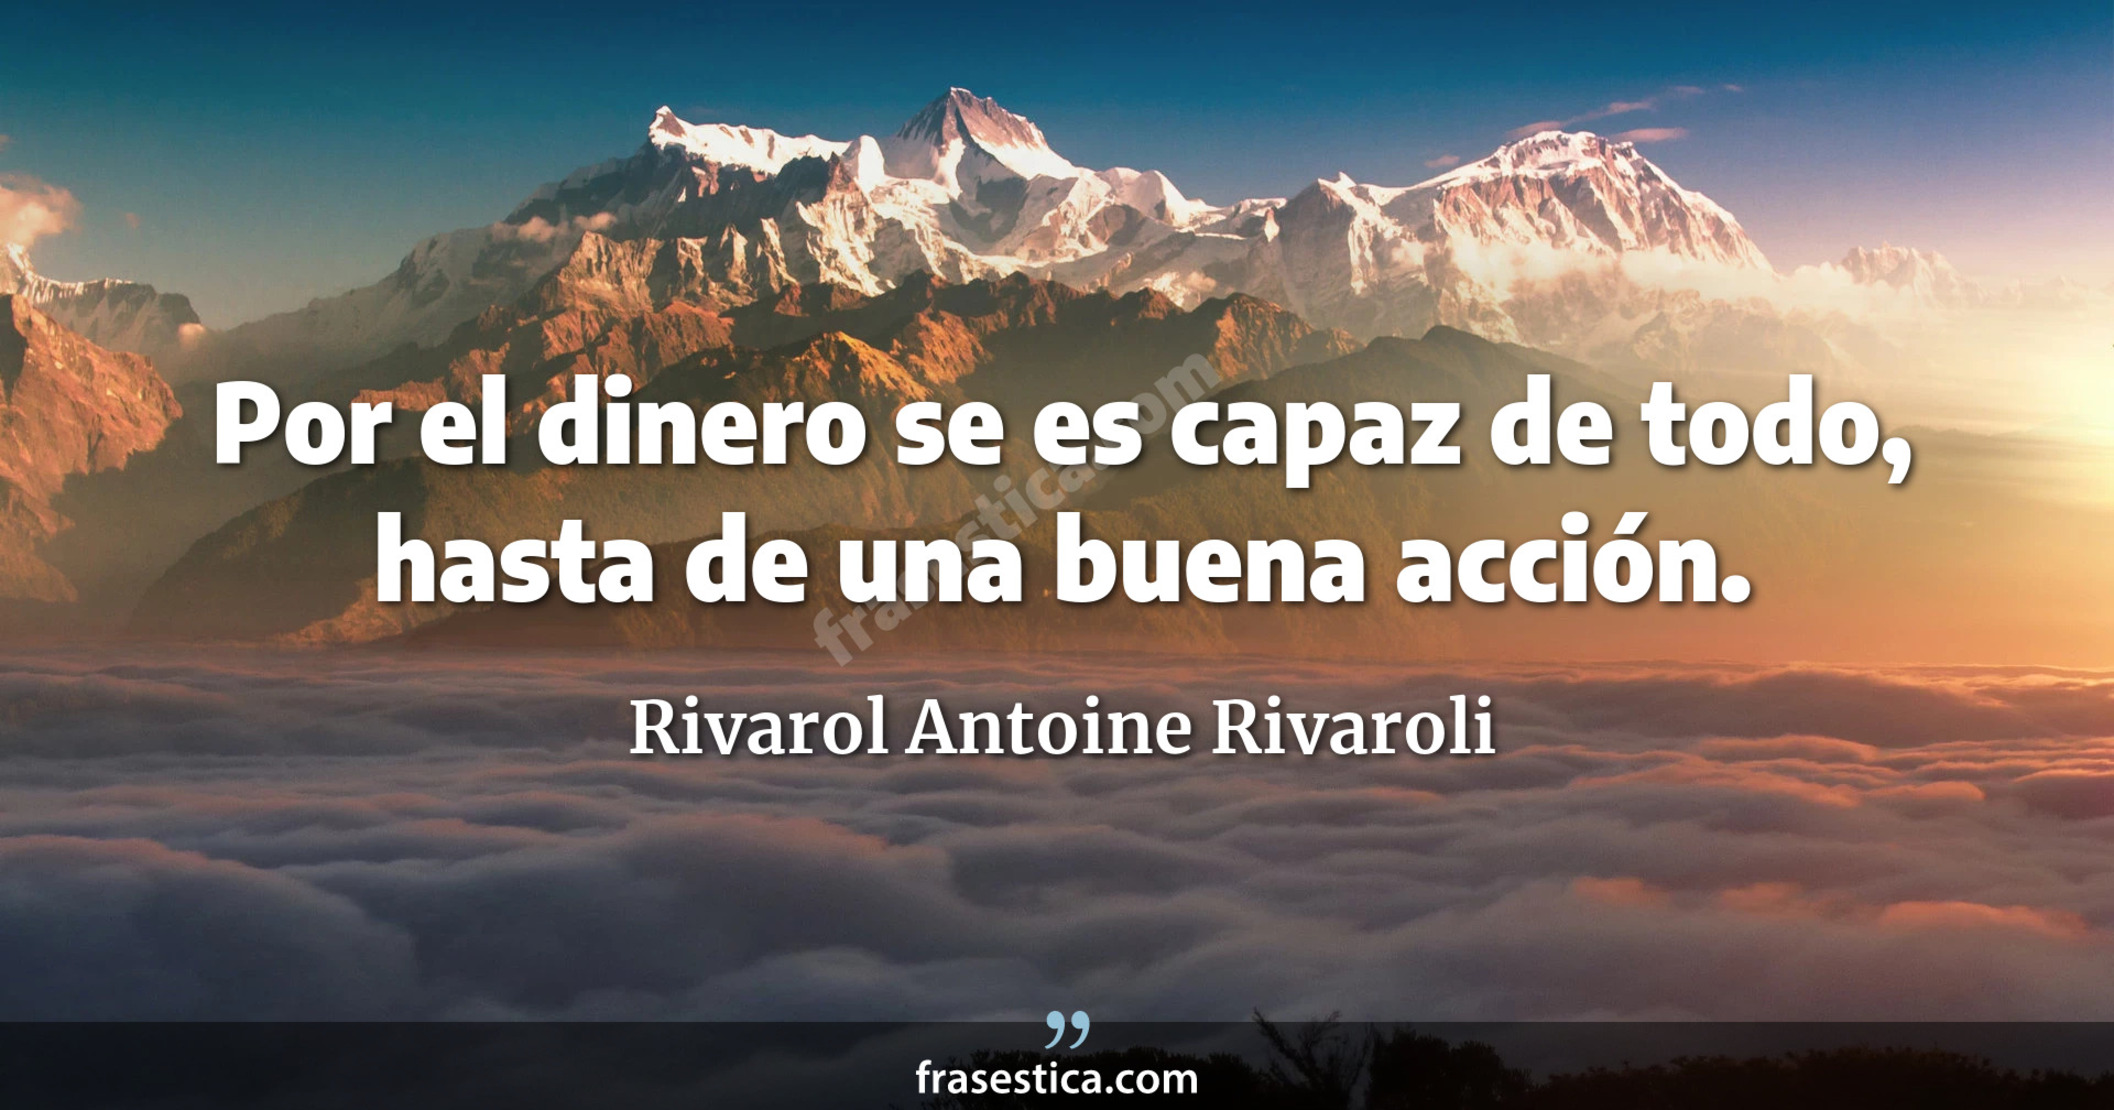 Por el dinero se es capaz de todo, hasta de una buena acción. - Rivarol Antoine Rivaroli